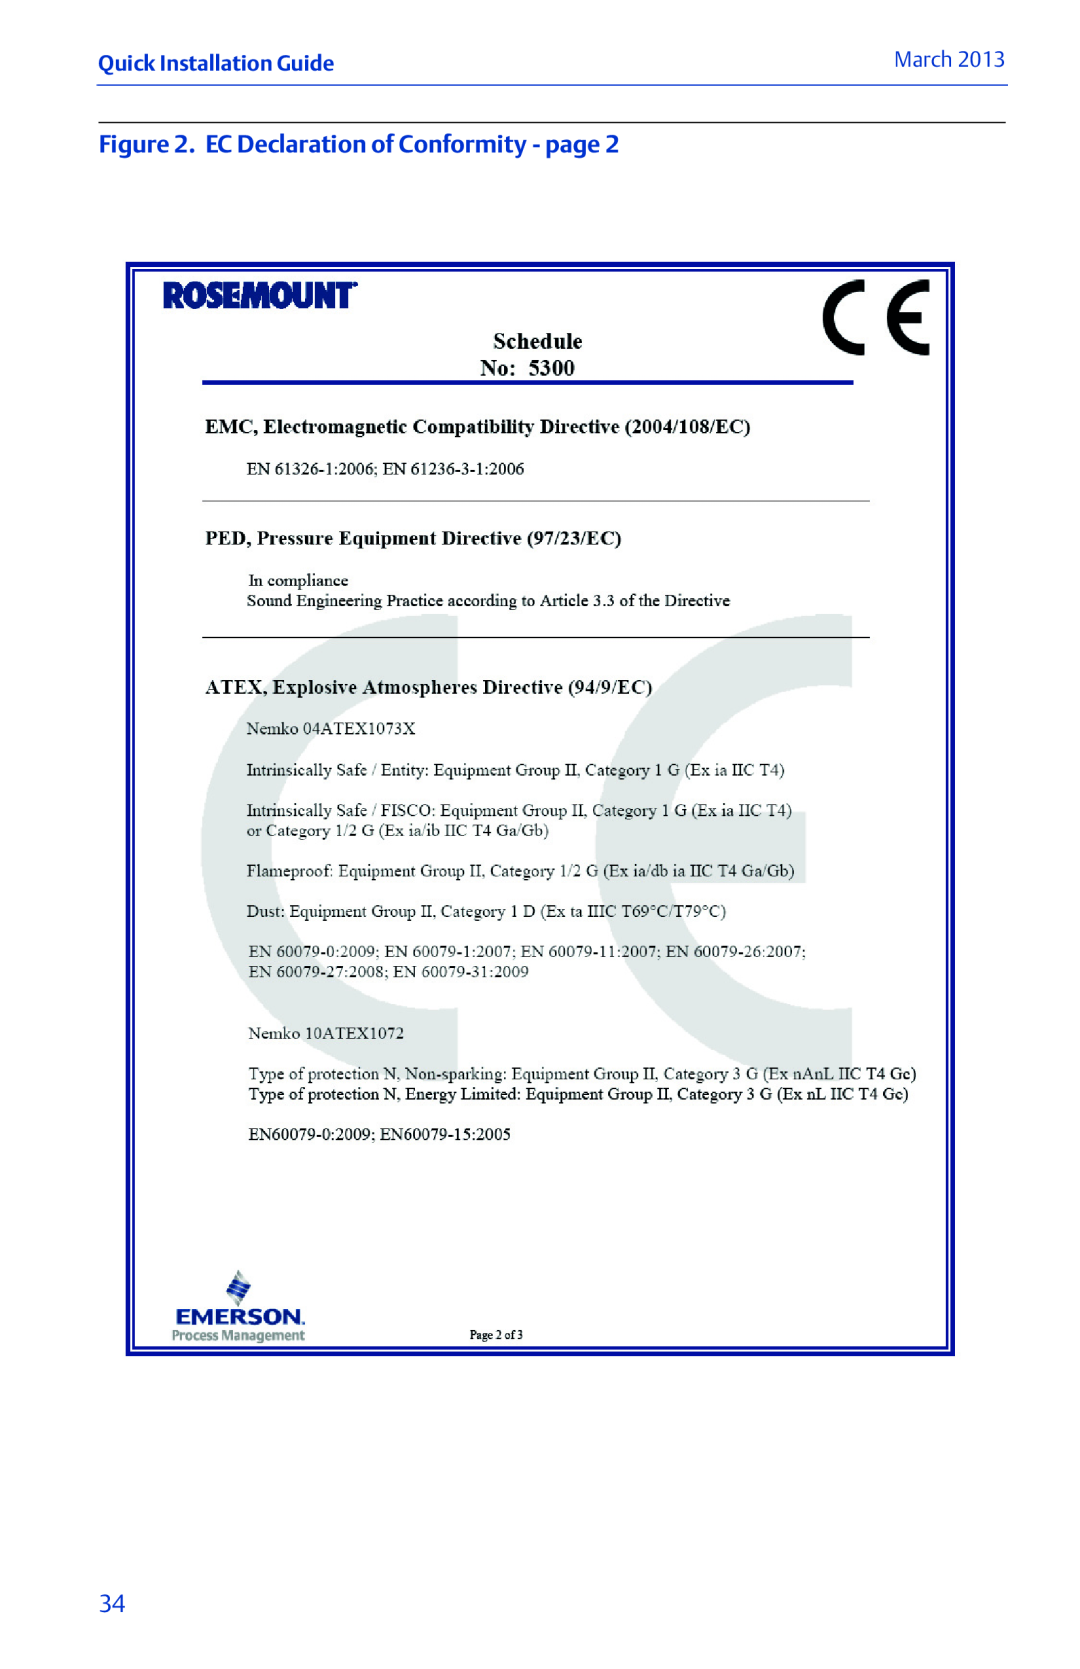 Emerson 00825-0100-4530 Rev EC manual EC Declaration of Conformity - page, Quick Installation Guide, March 